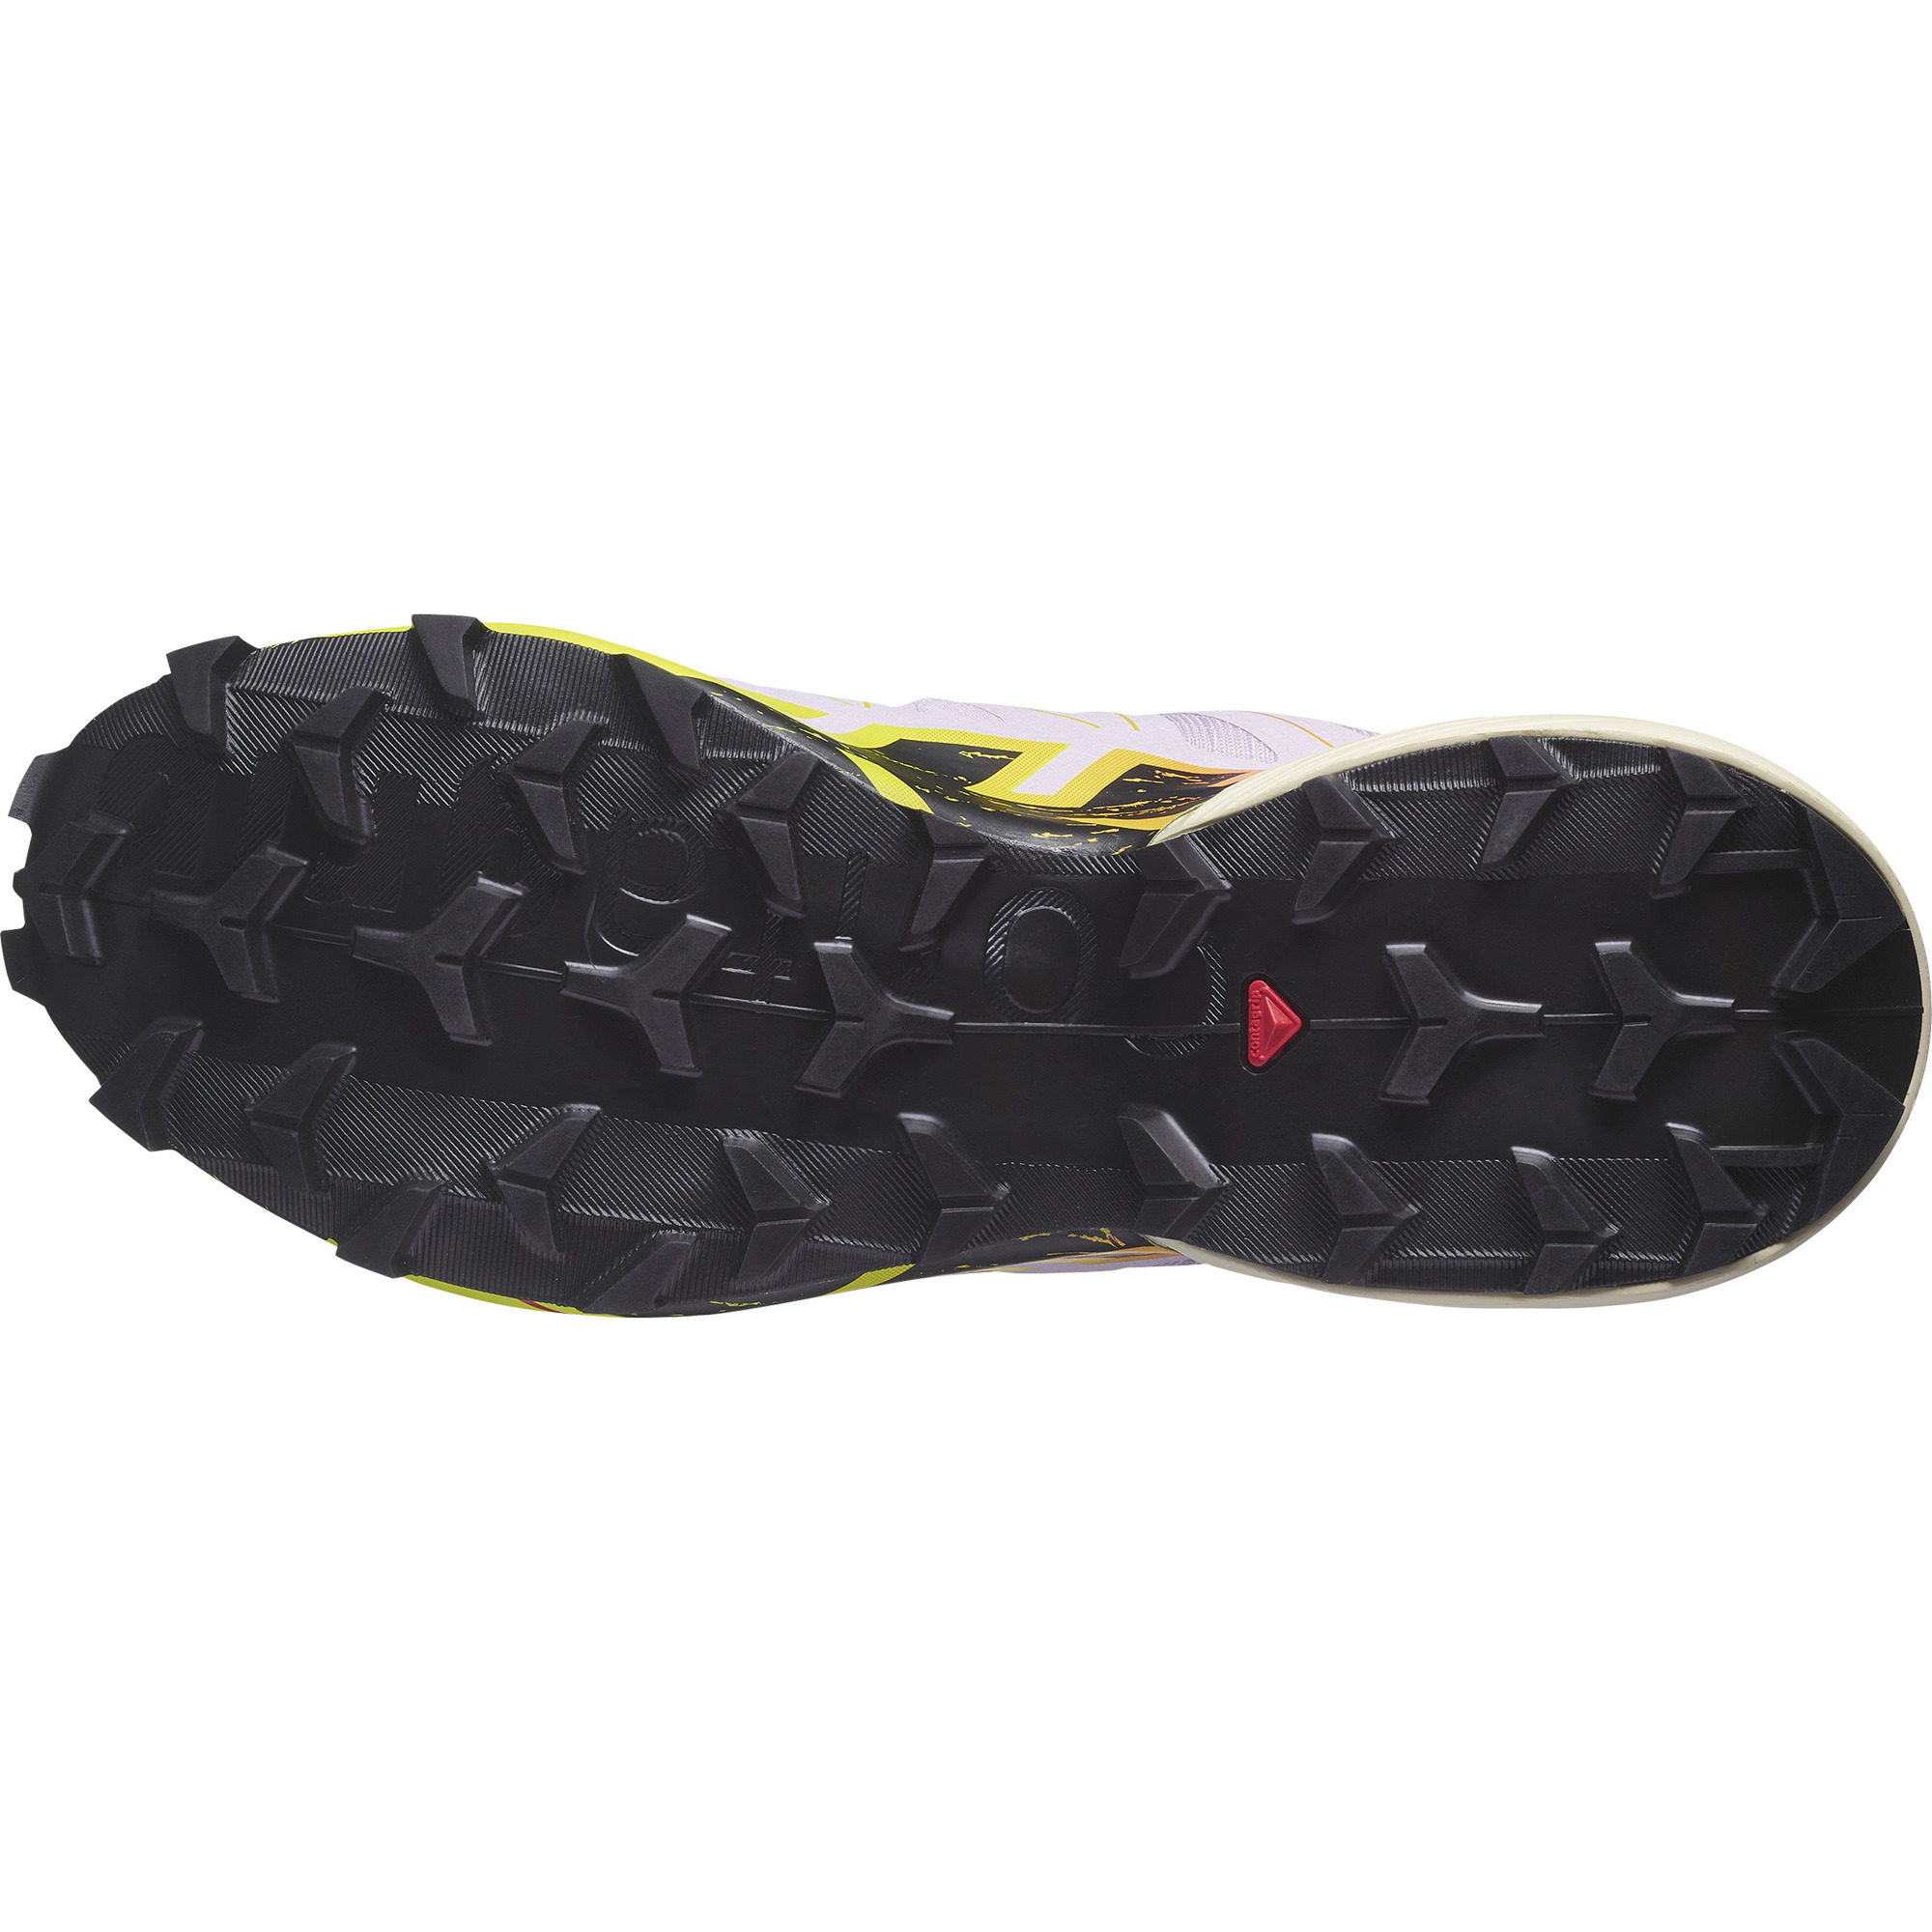  Salomon Women's SPEEDCROSS PEAK CLIMASALOMON WATERPROOF Trail  Running Shoes for Women, Black / Nightshade / Orchid Petal, 7